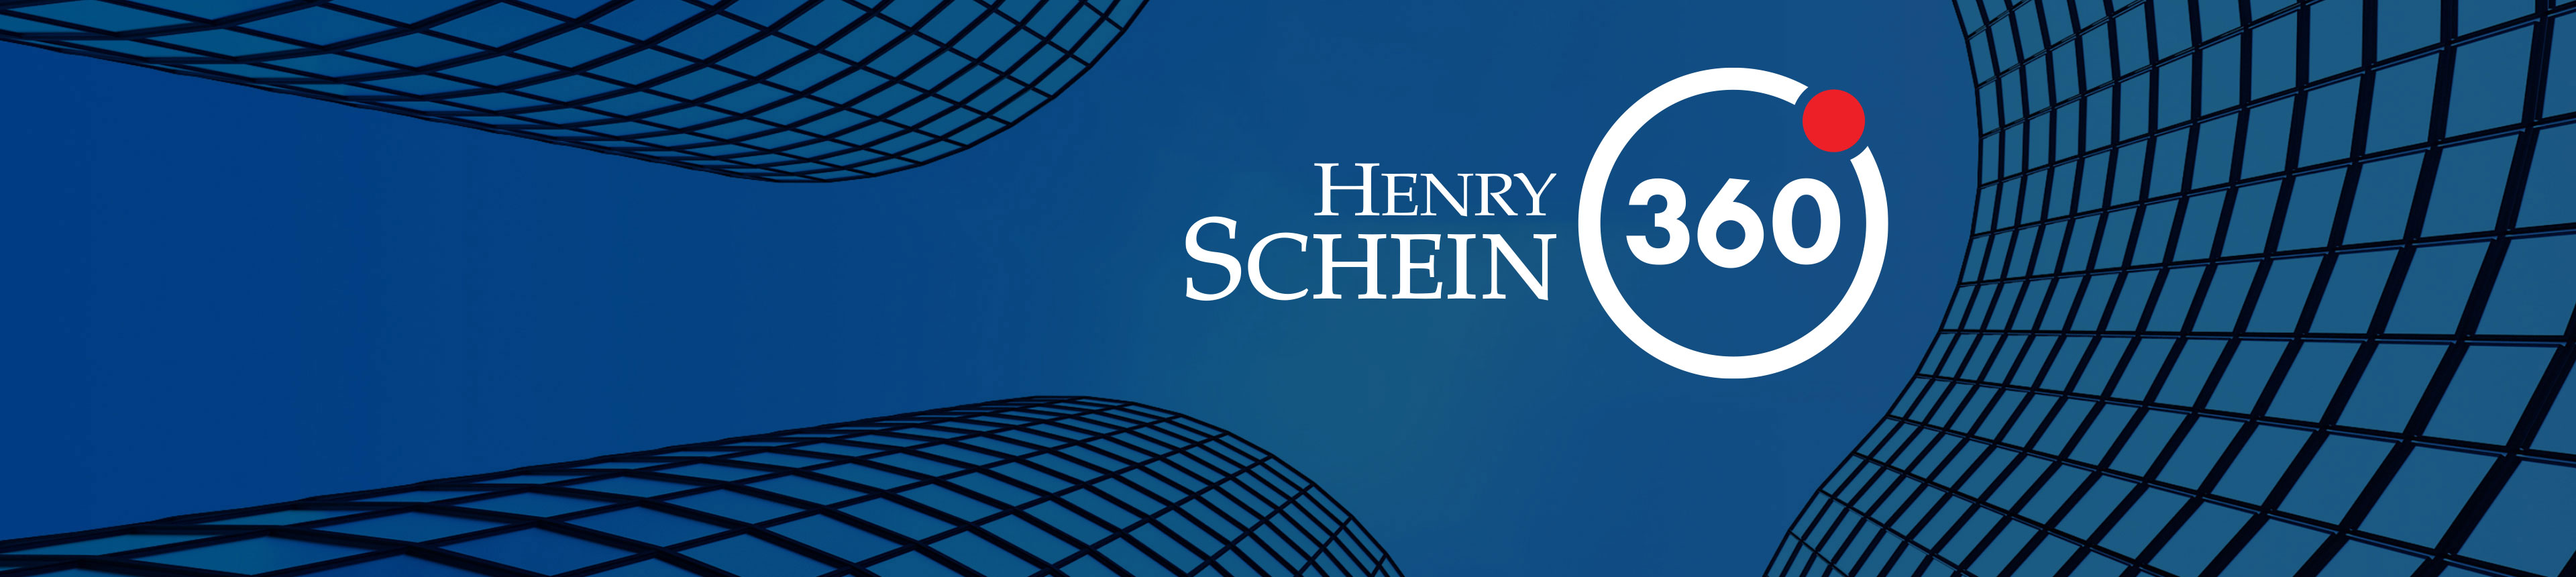 Henry Schein 360